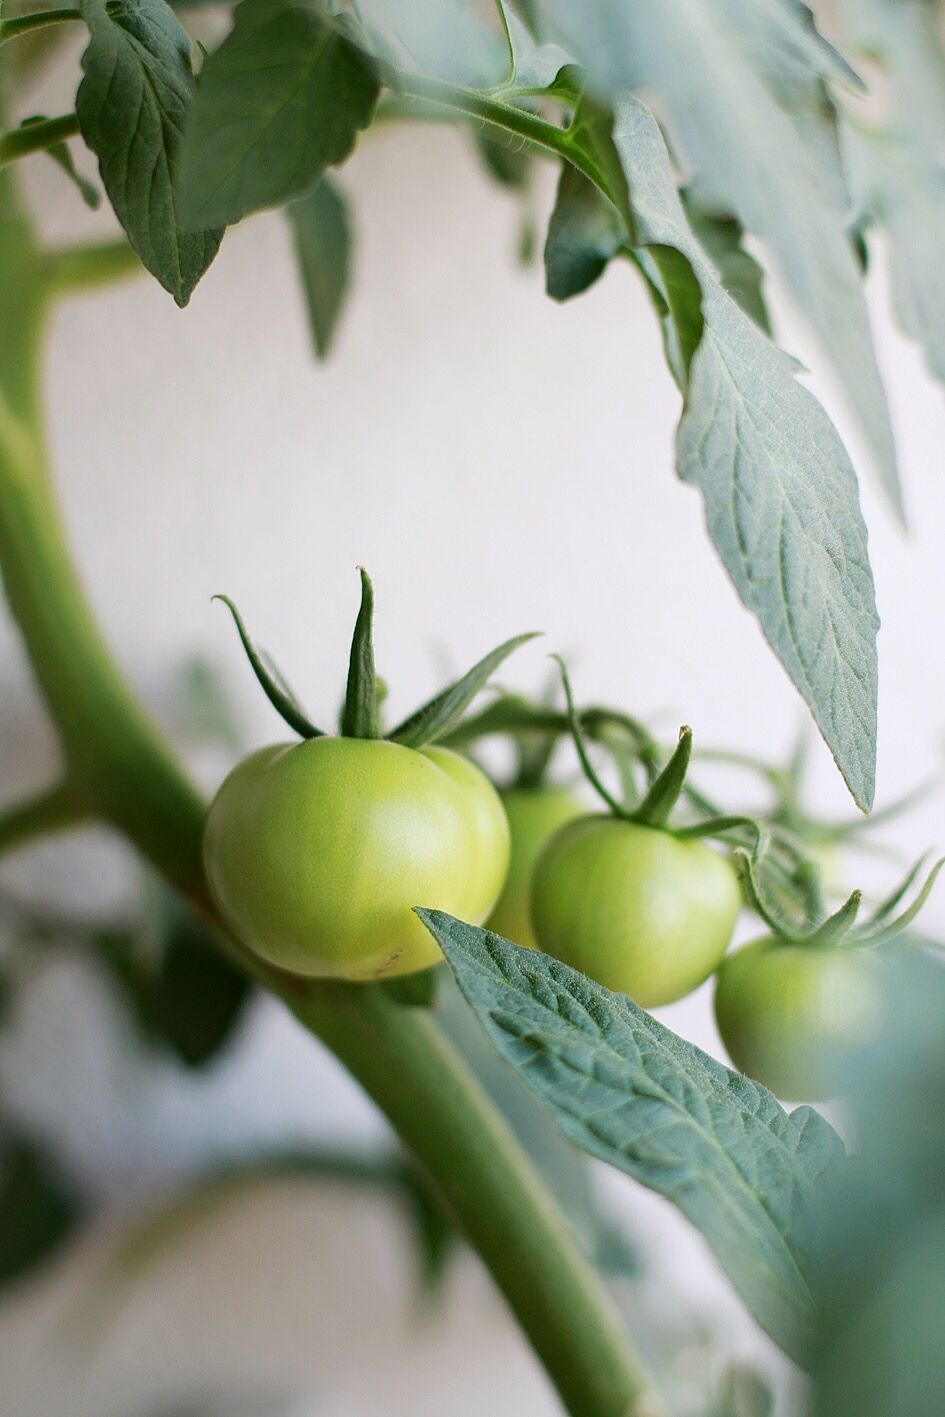 Odla tomat förkultivering